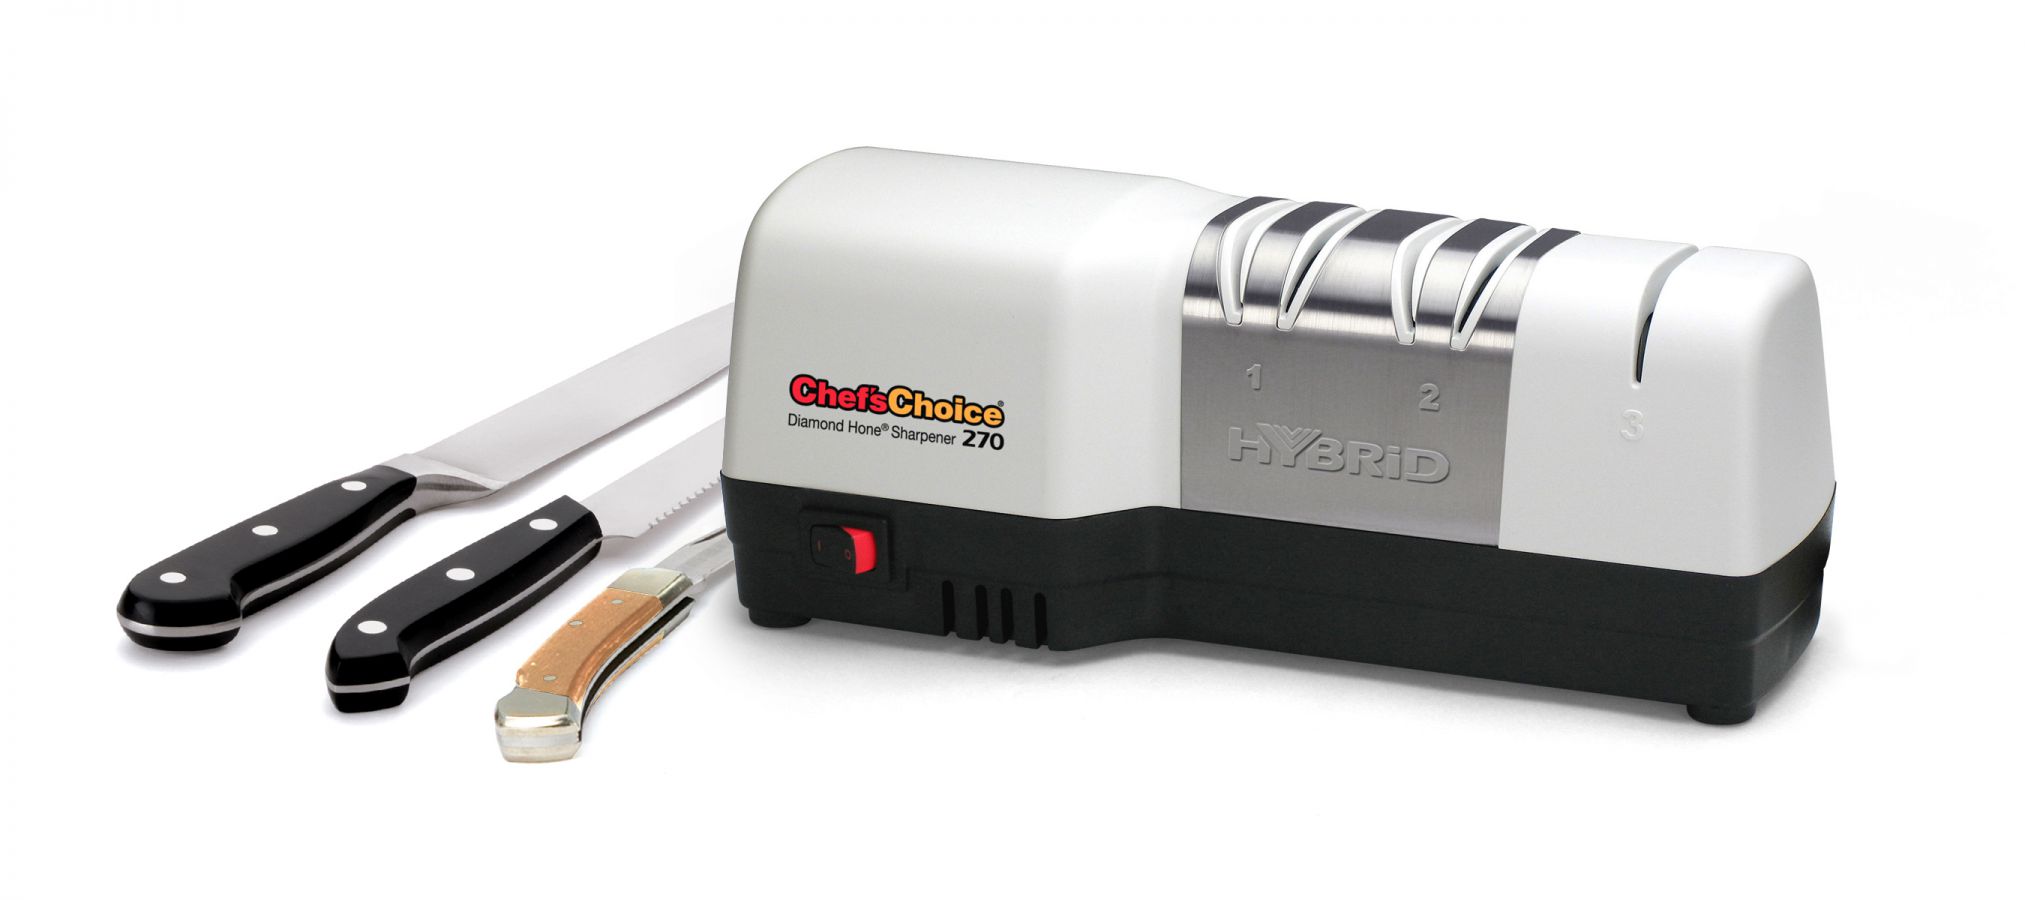 Электрическая точилка для ножей Chefs Choice 270 (CH 270) за 9790 руб., фото 2